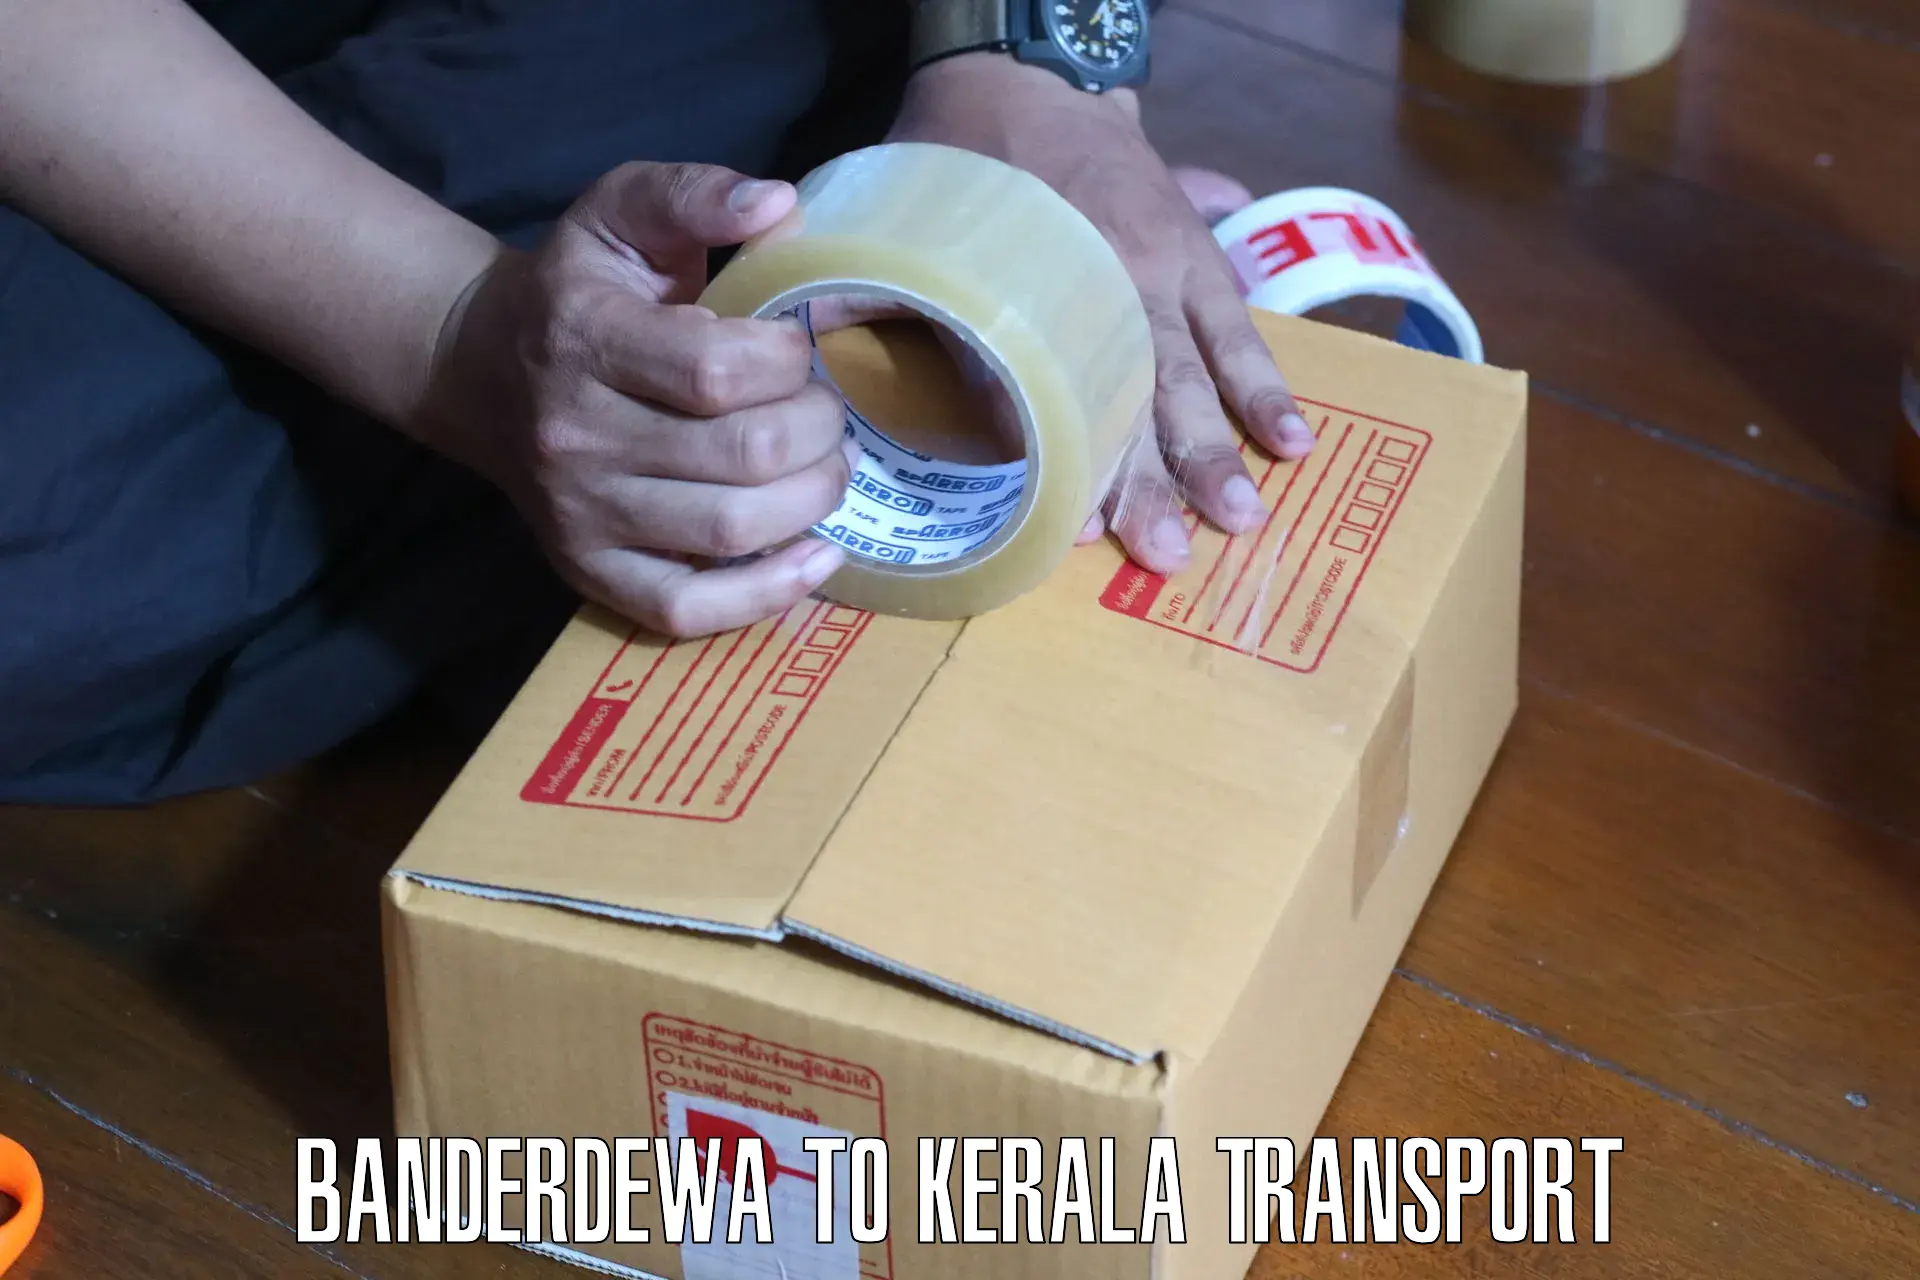 Nearest transport service Banderdewa to Nenmara